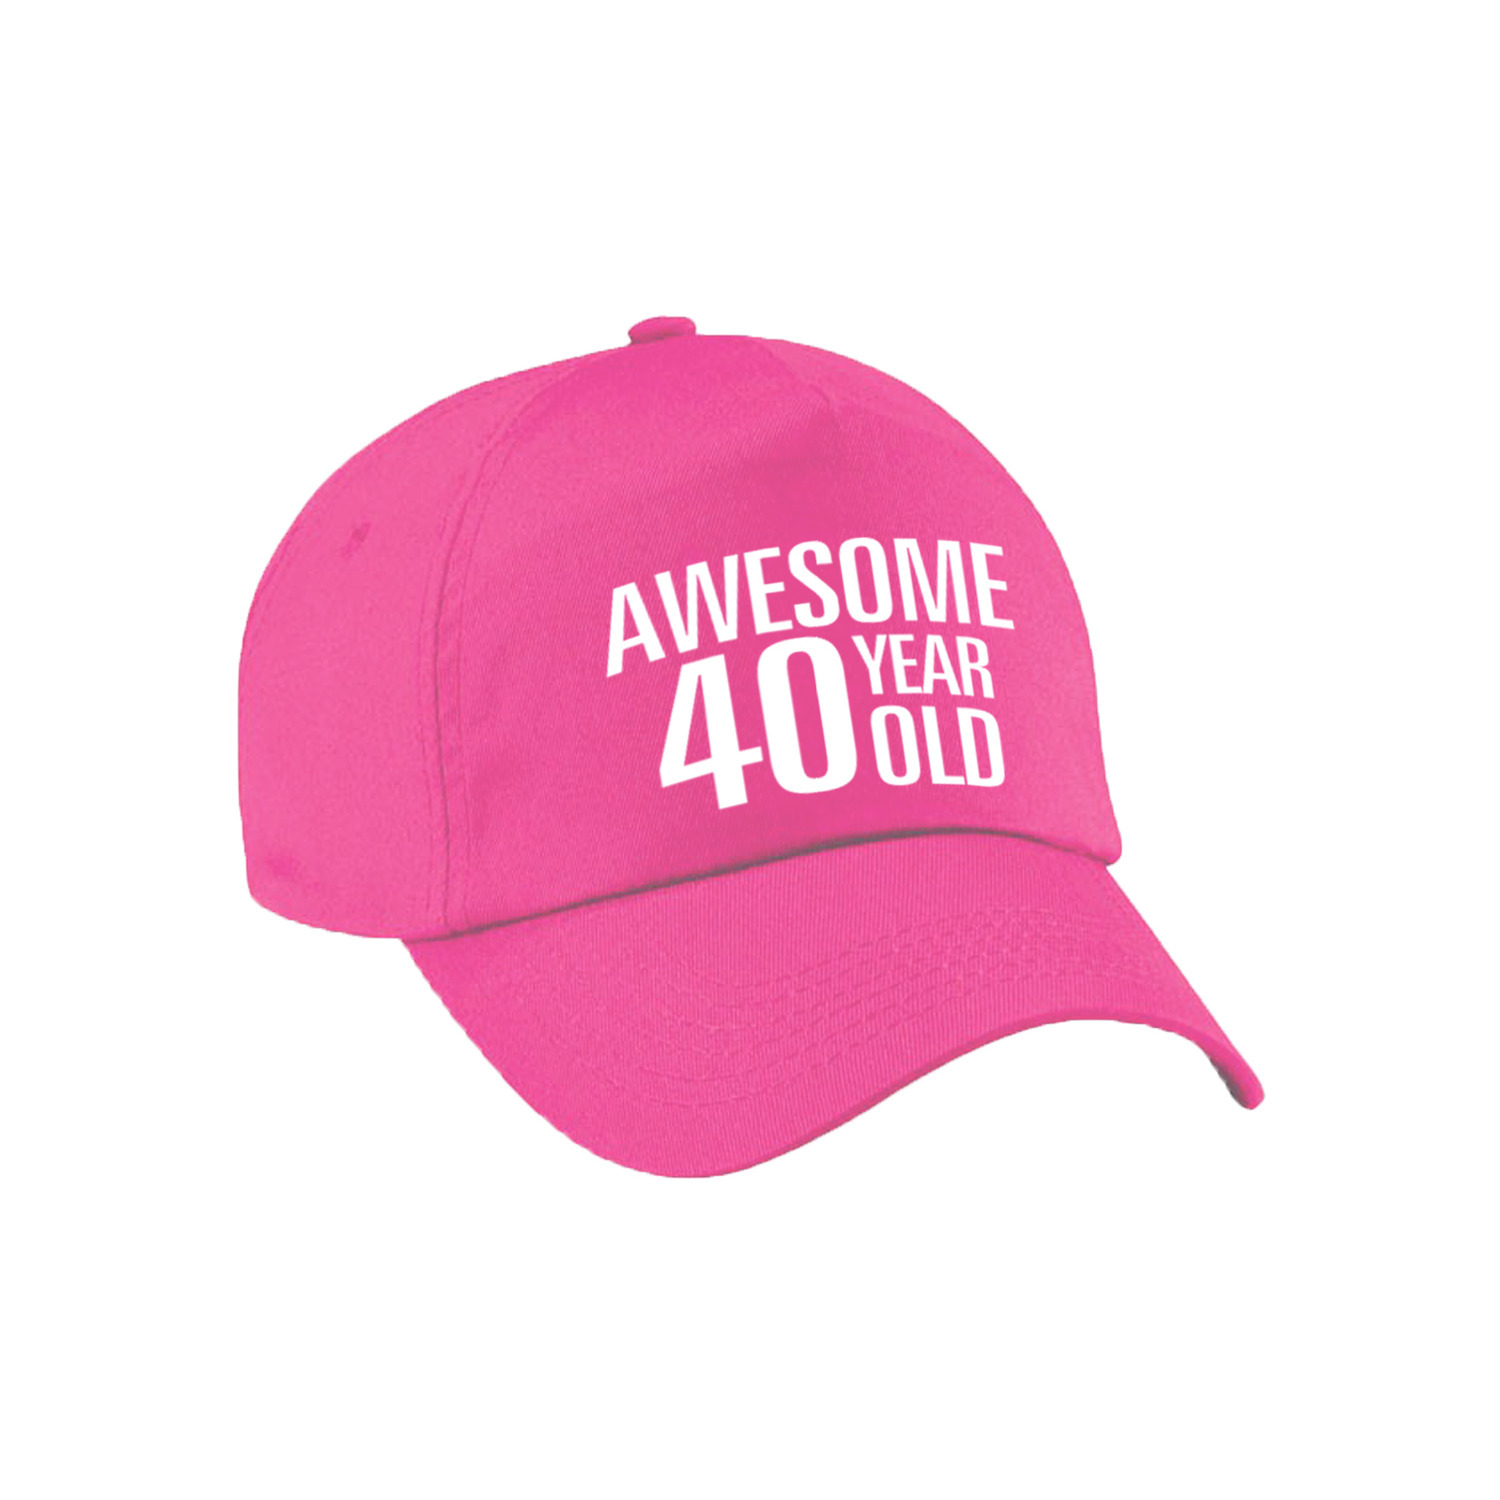 Awesome 40 year old verjaardag pet / cap roze voor dames en heren